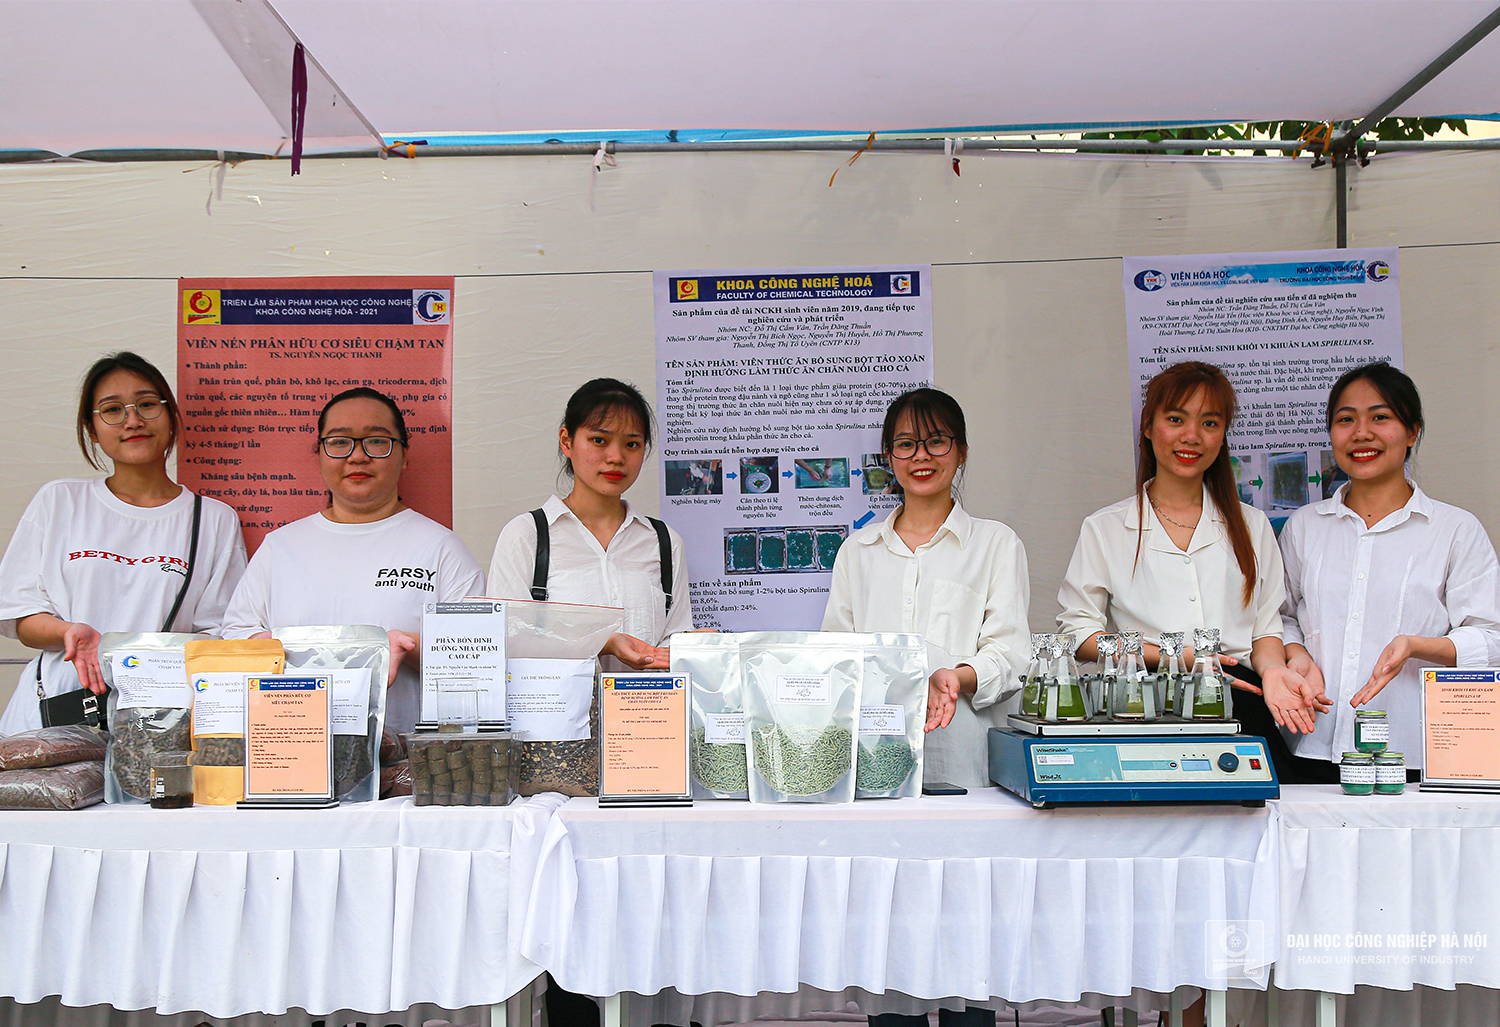 Chemical Technology Fair